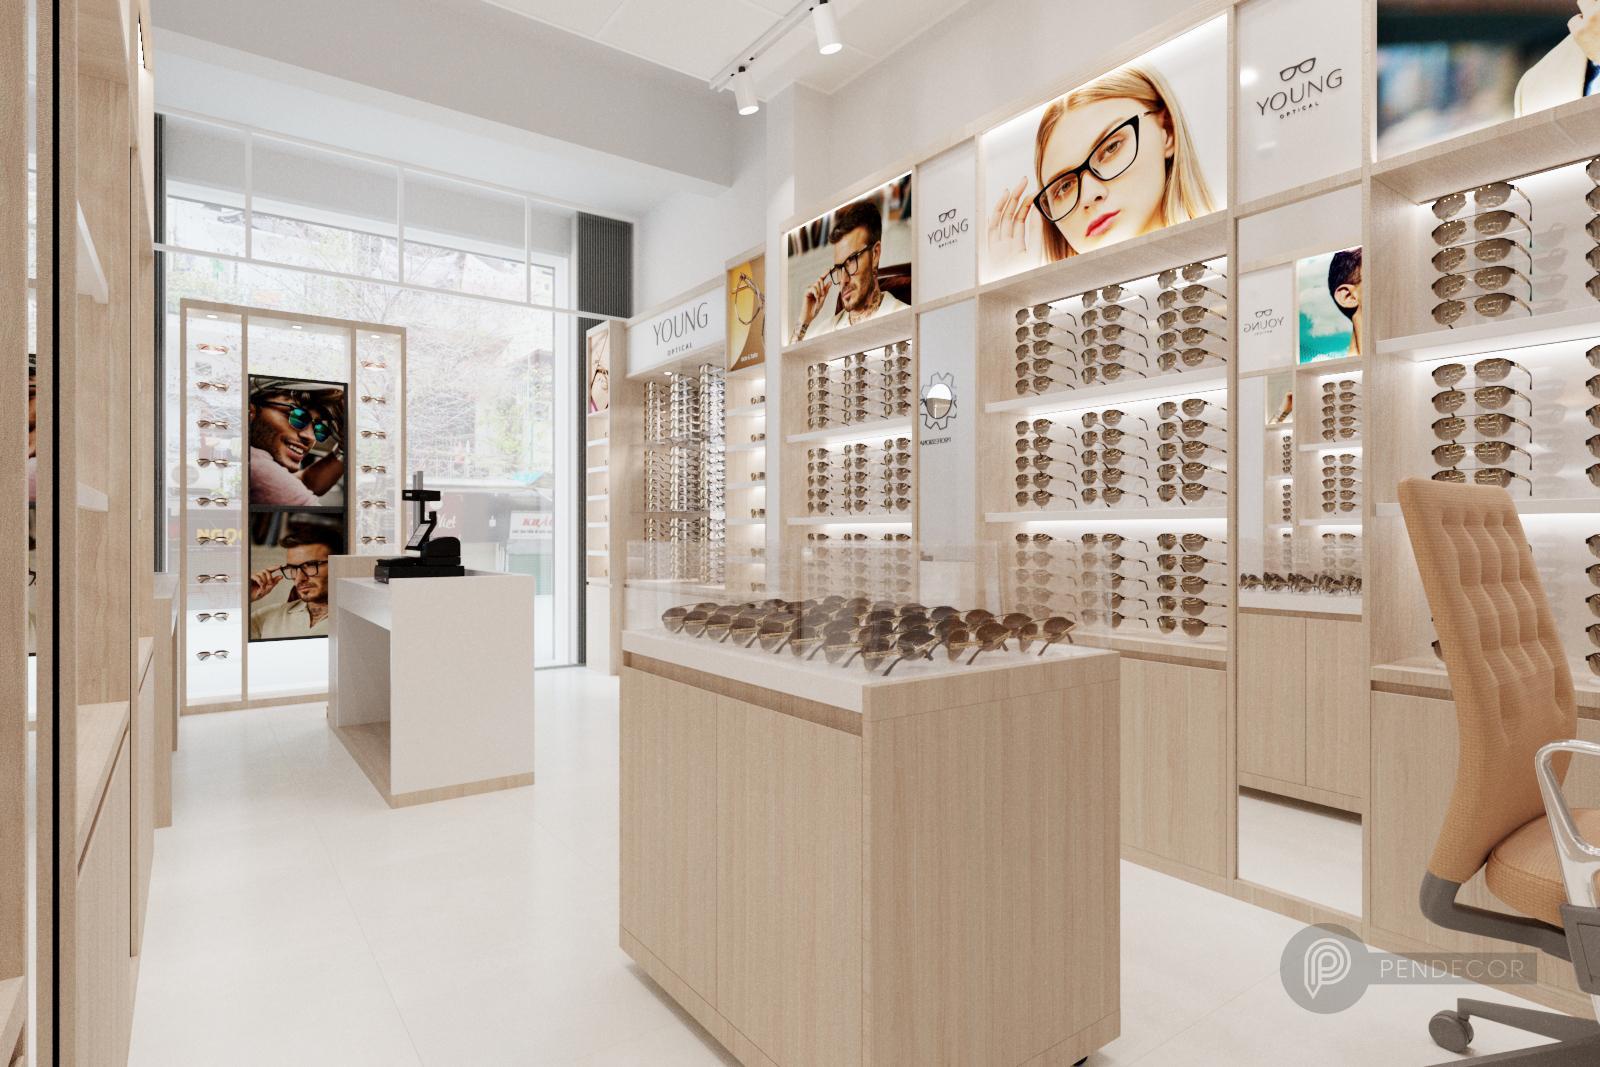 Thiết kế shop mắt kính Young Optical: Shop mắt kính Young Optical, một thương hiệu hàng đầu đã cho ra mắt thiết kế mới tại các cửa hàng trên toàn quốc, với không gian mang phong cách hiện đại và trẻ trung để khách hàng có thể trải nghiệm thực sự khi đến thăm. Sản phẩm mới với chất liệu nhẹ, thoải mái đem lại cảm giác tuyệt vời khi đeo.